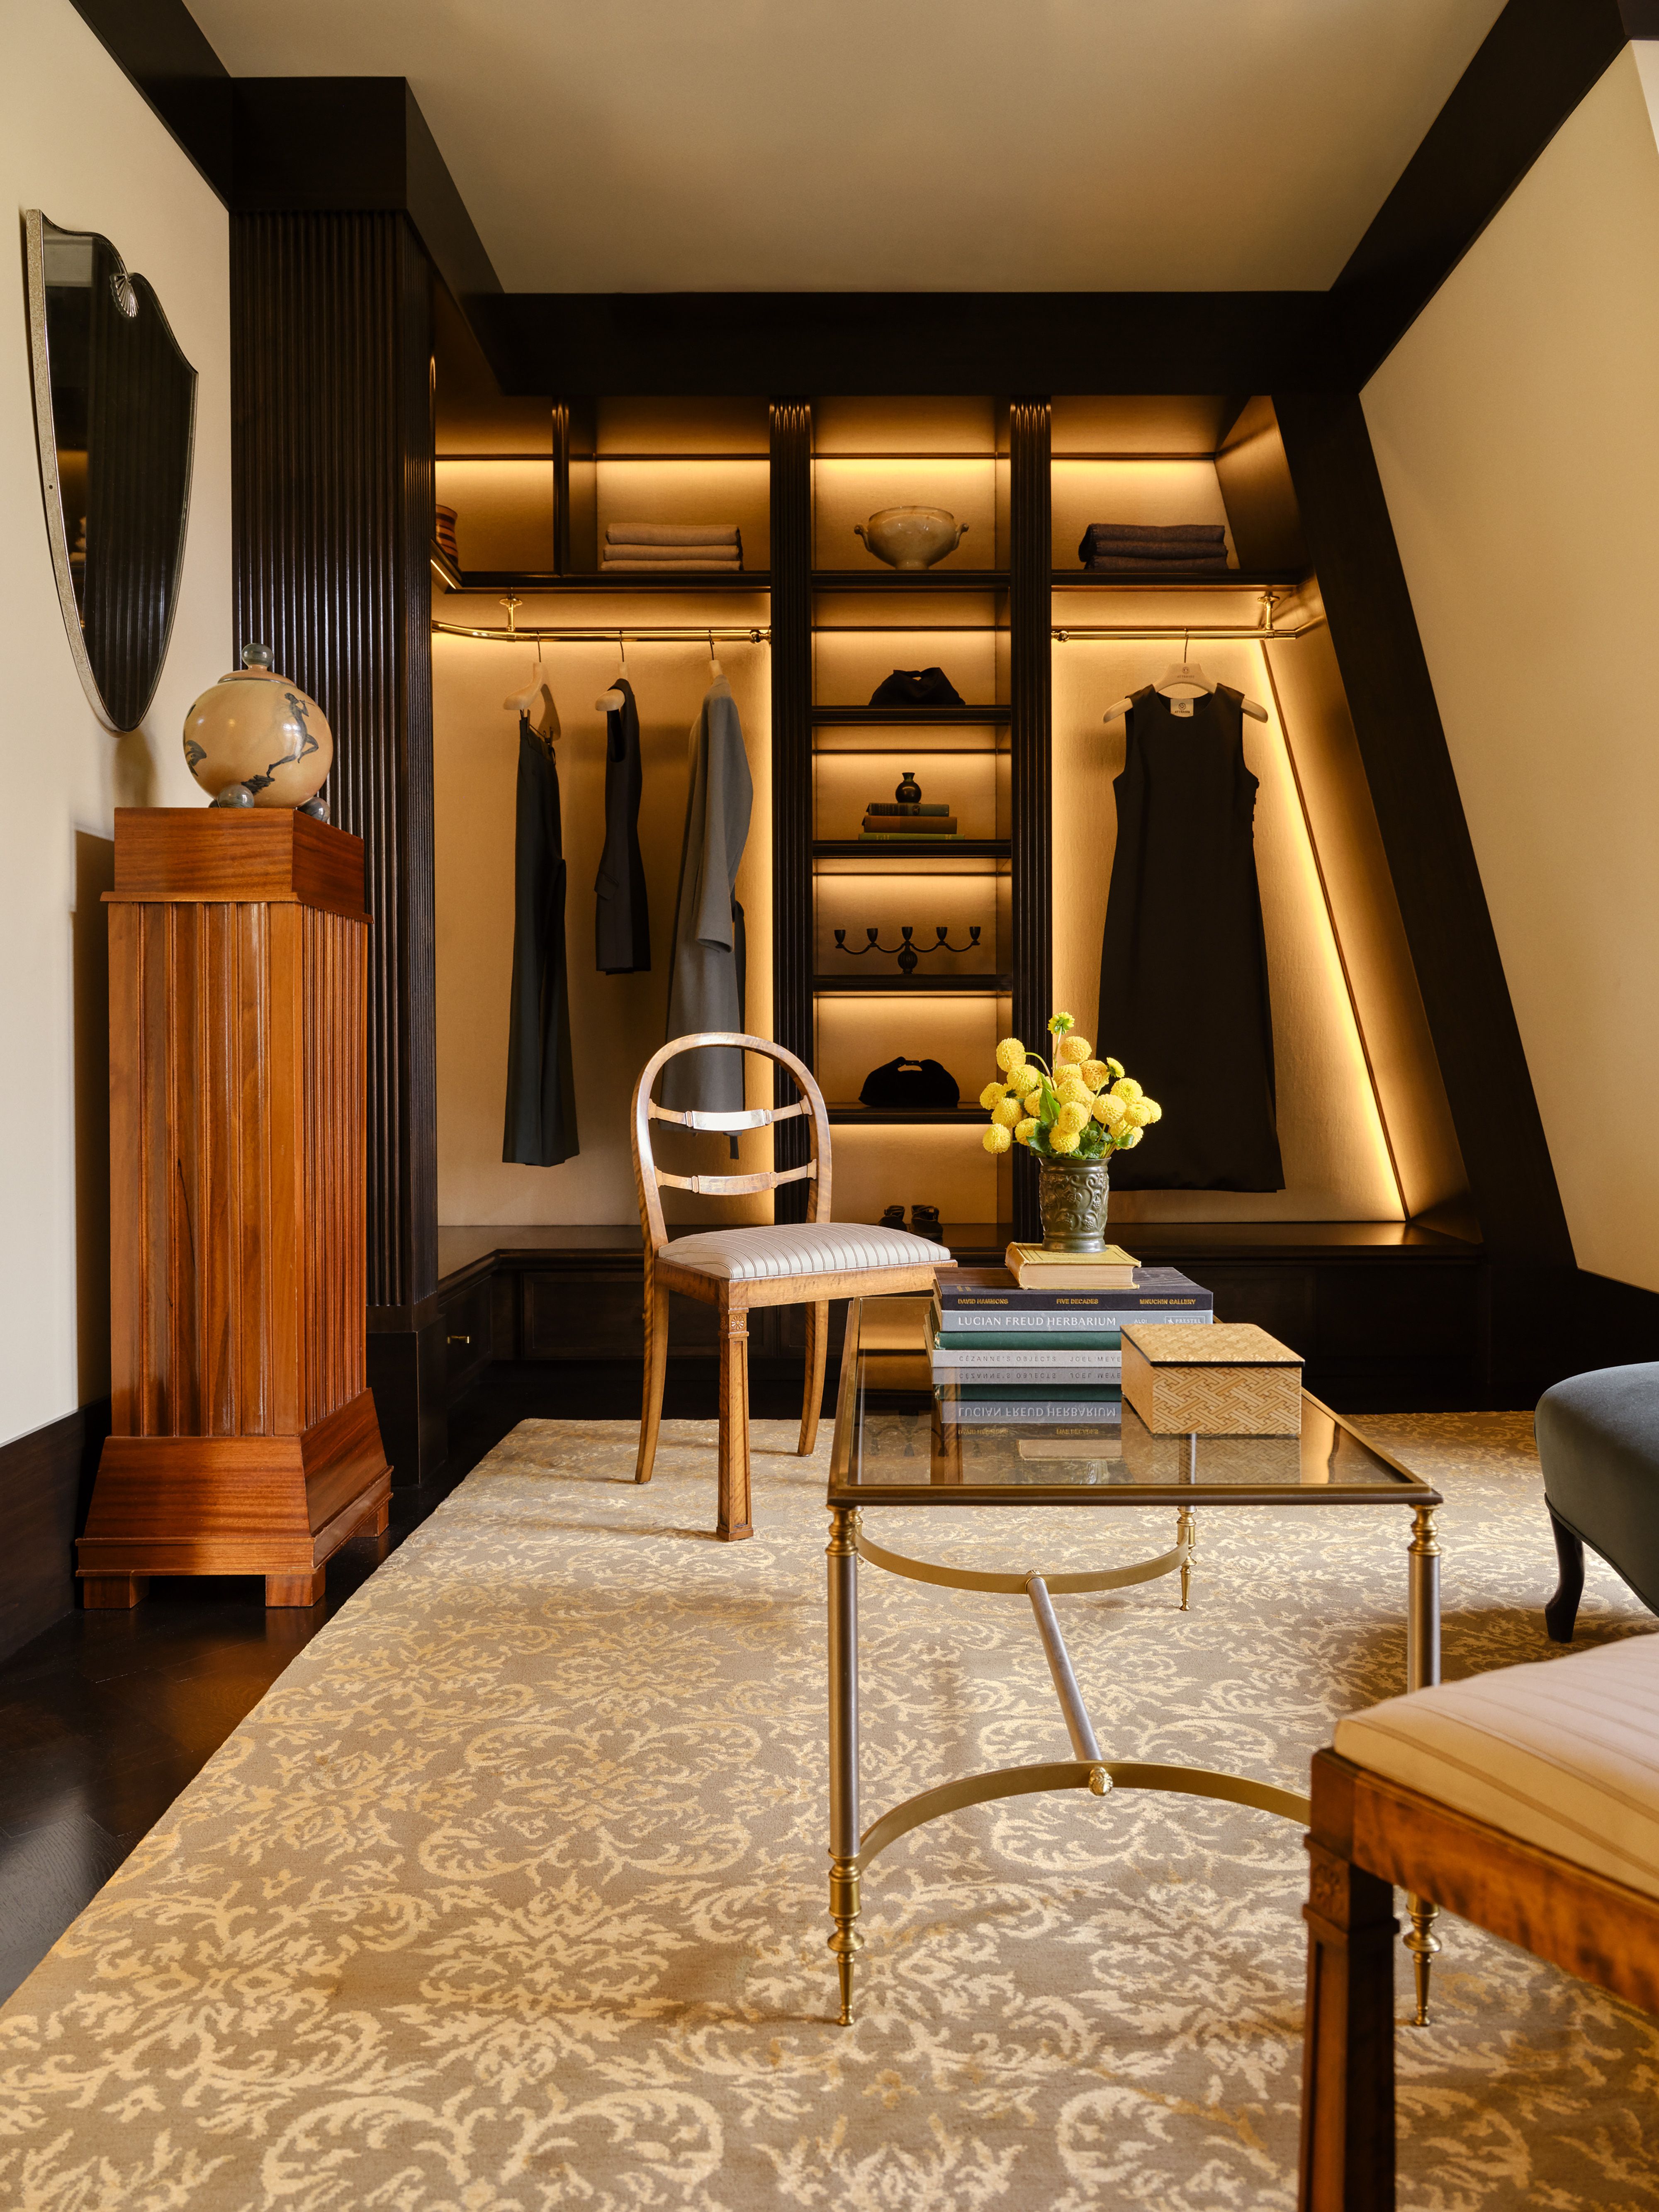 1 Louis Vuitton Trunk, 200 New Designs – l'Étoile de Saint Honoré